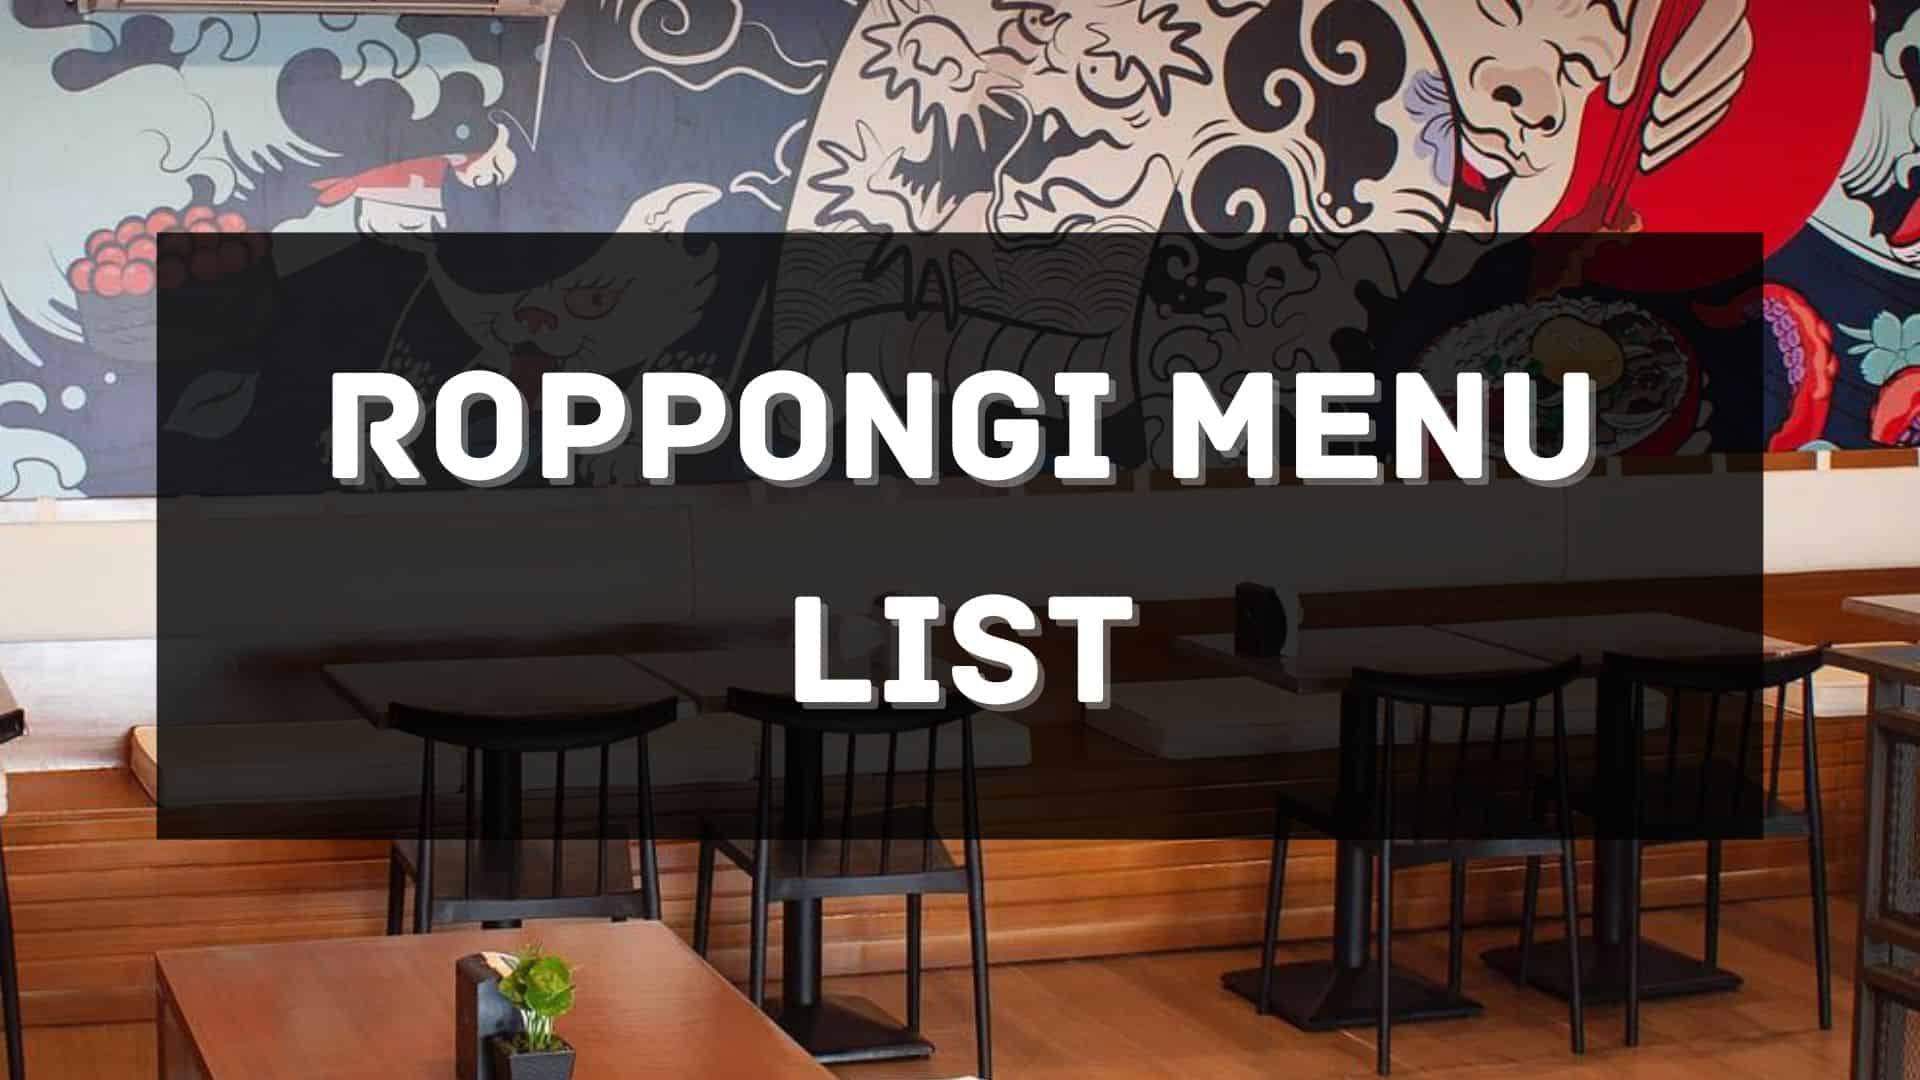 roppongi menu prices philippines